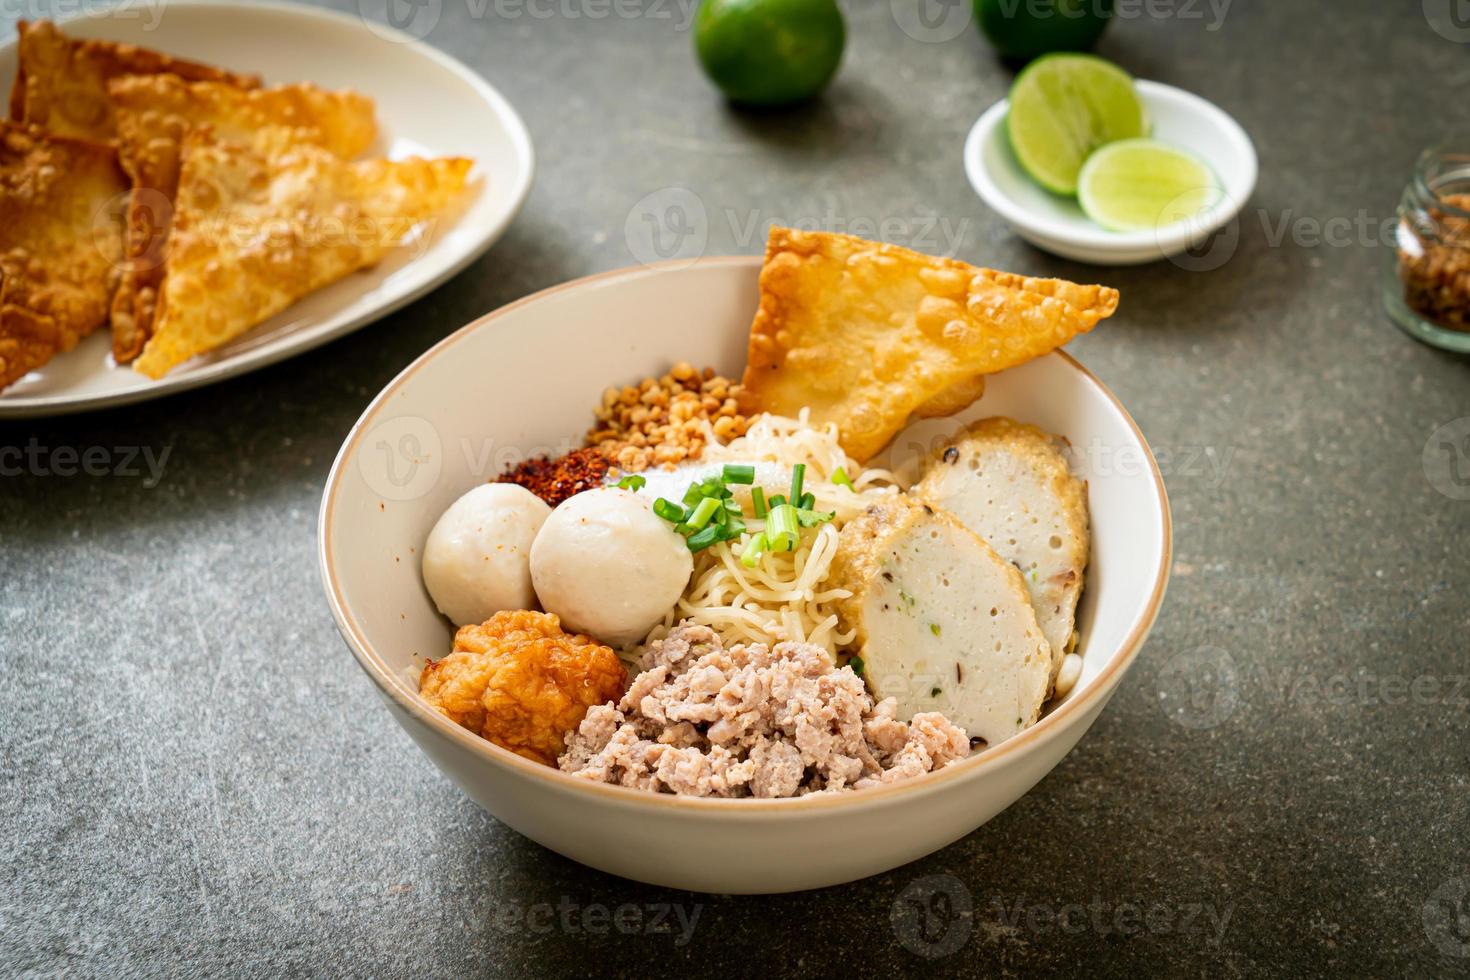 pittige eiernoedels met visballetjes en garnalenballetjes zonder soep - Aziatisch eten - foto